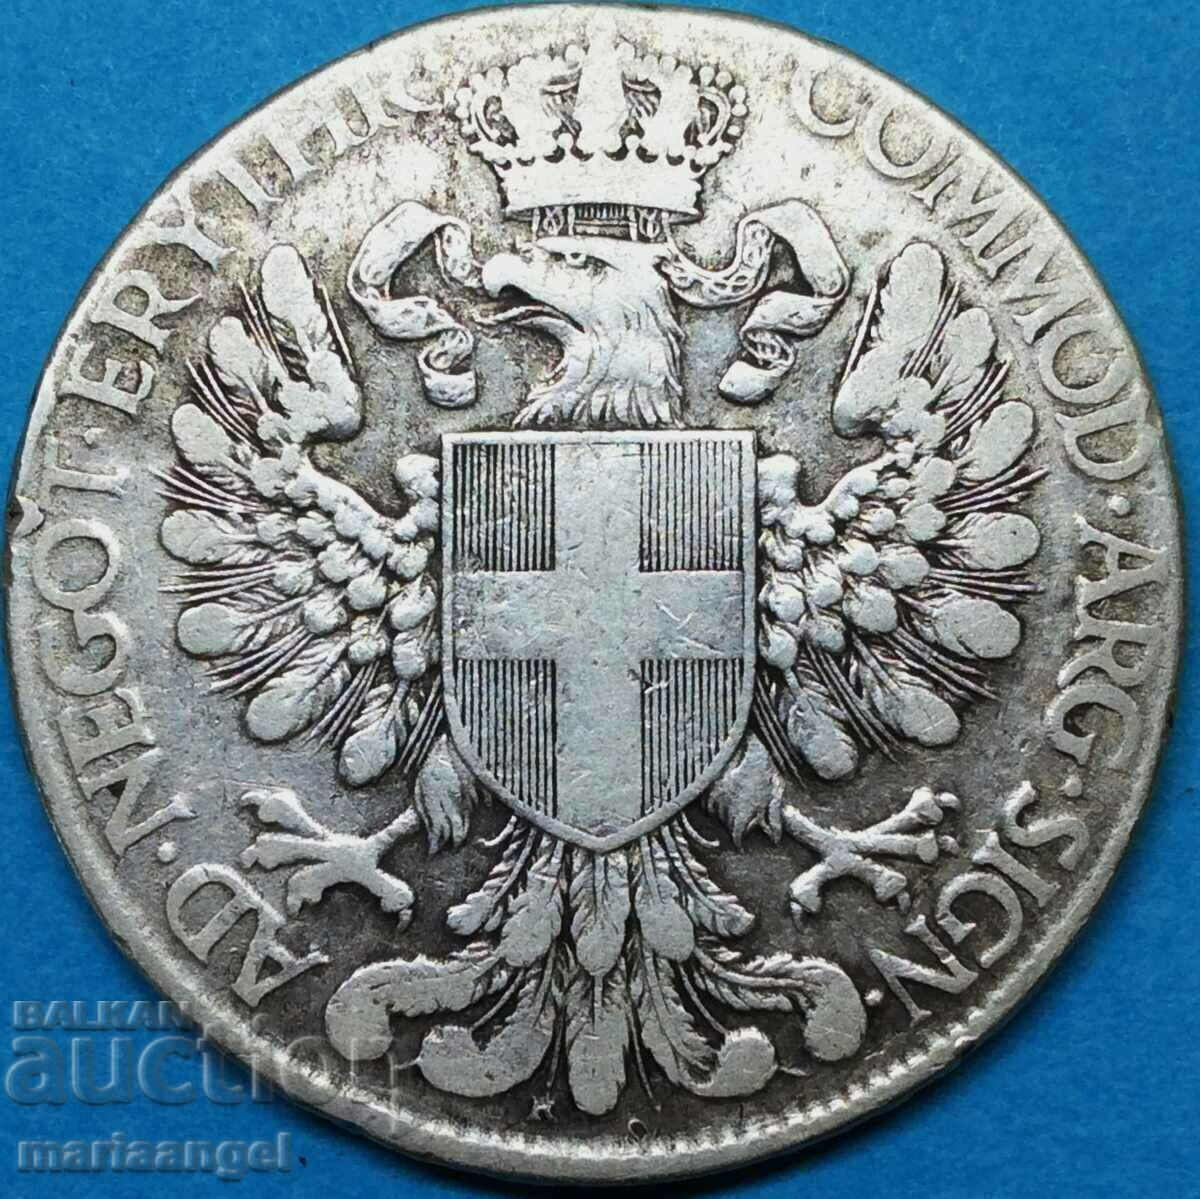 Eritrea 1 thaler 1918 Ιταλική αποικία 27,67g ασήμι